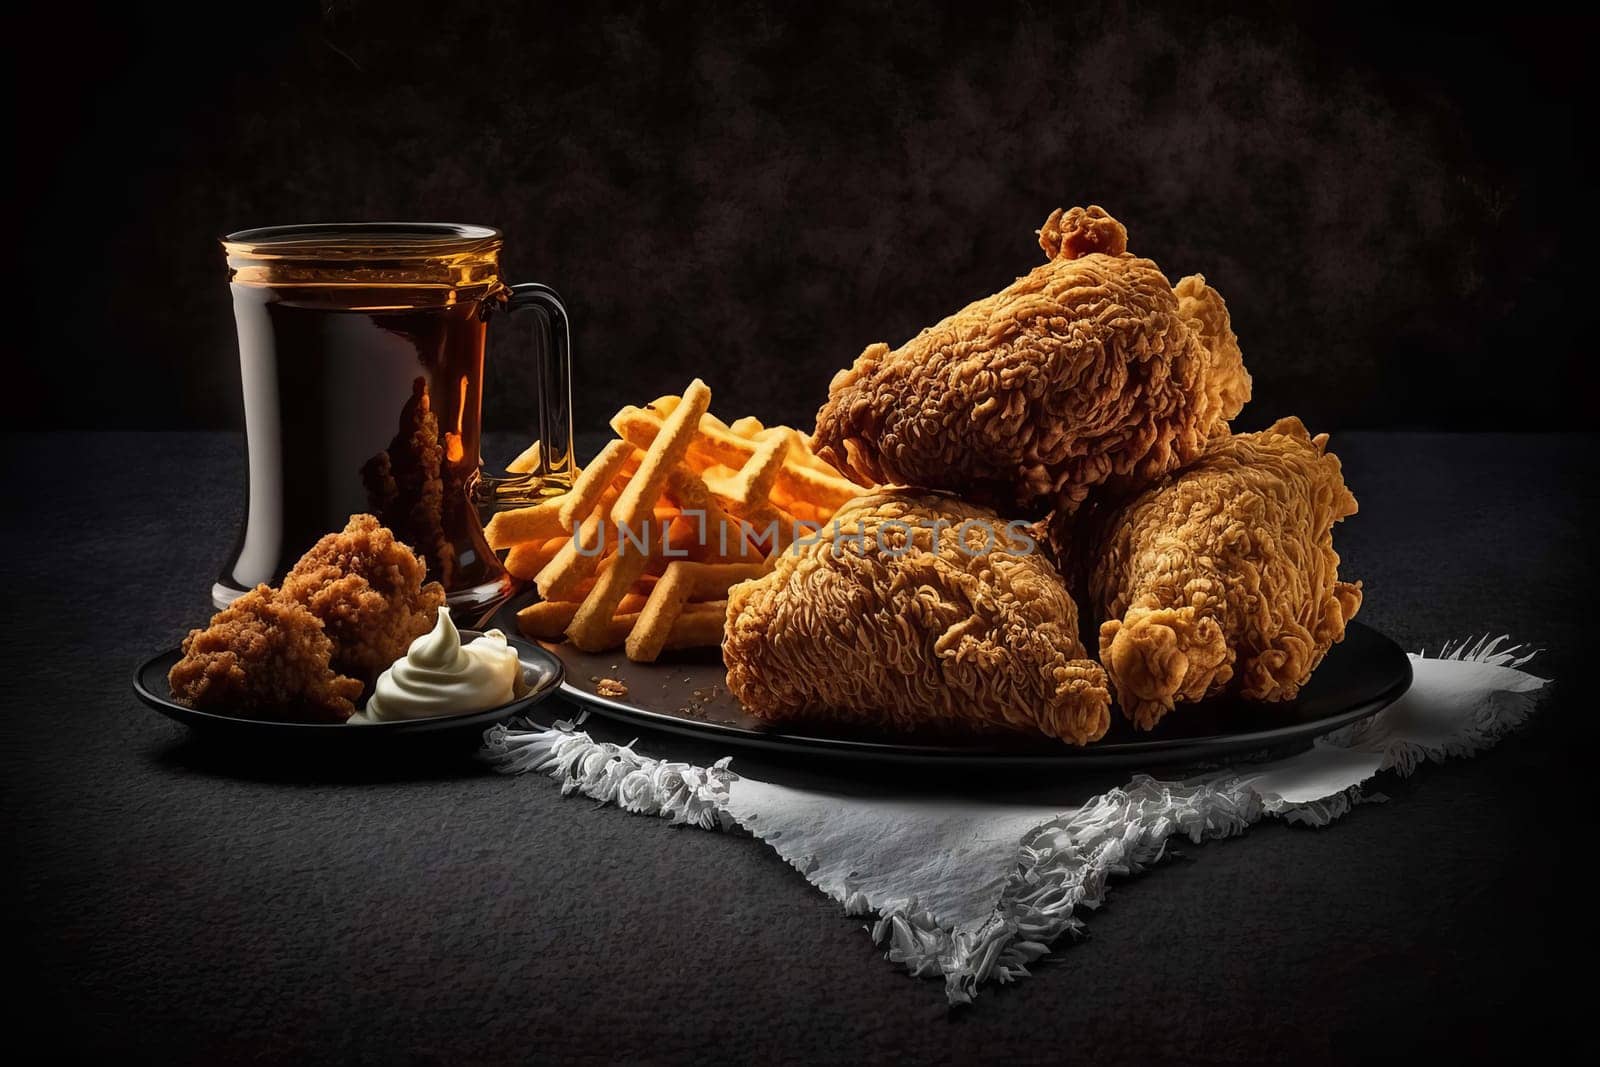 Fried chicken, fast food, chicken pieces dark black background, Generative AI.